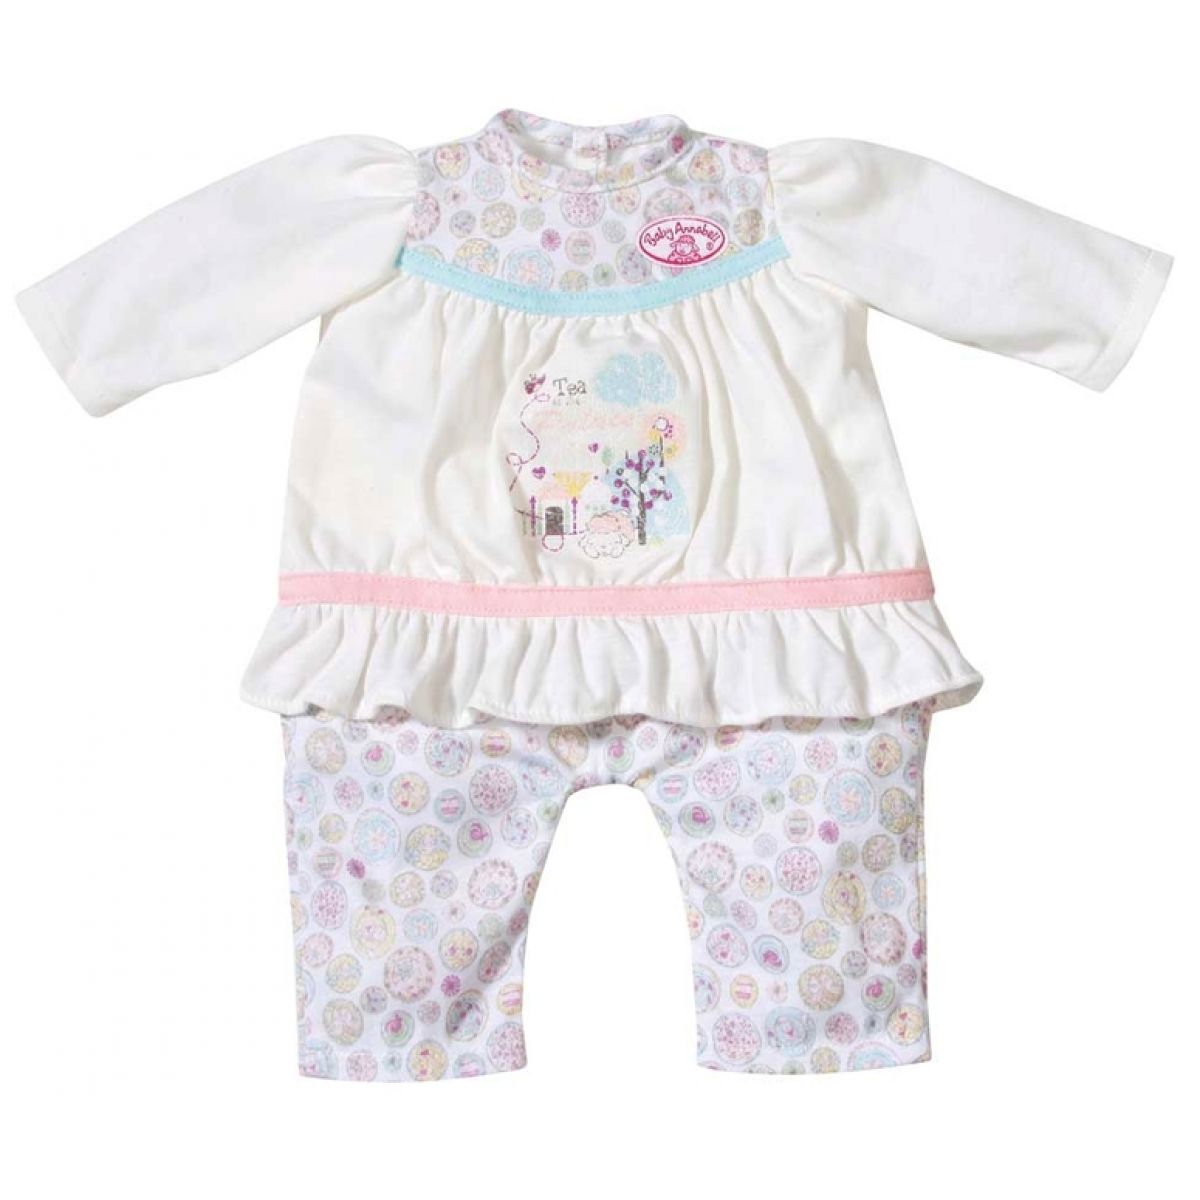 Baby Annabell Dupačky 791158 - bílé nohavice s obrázky